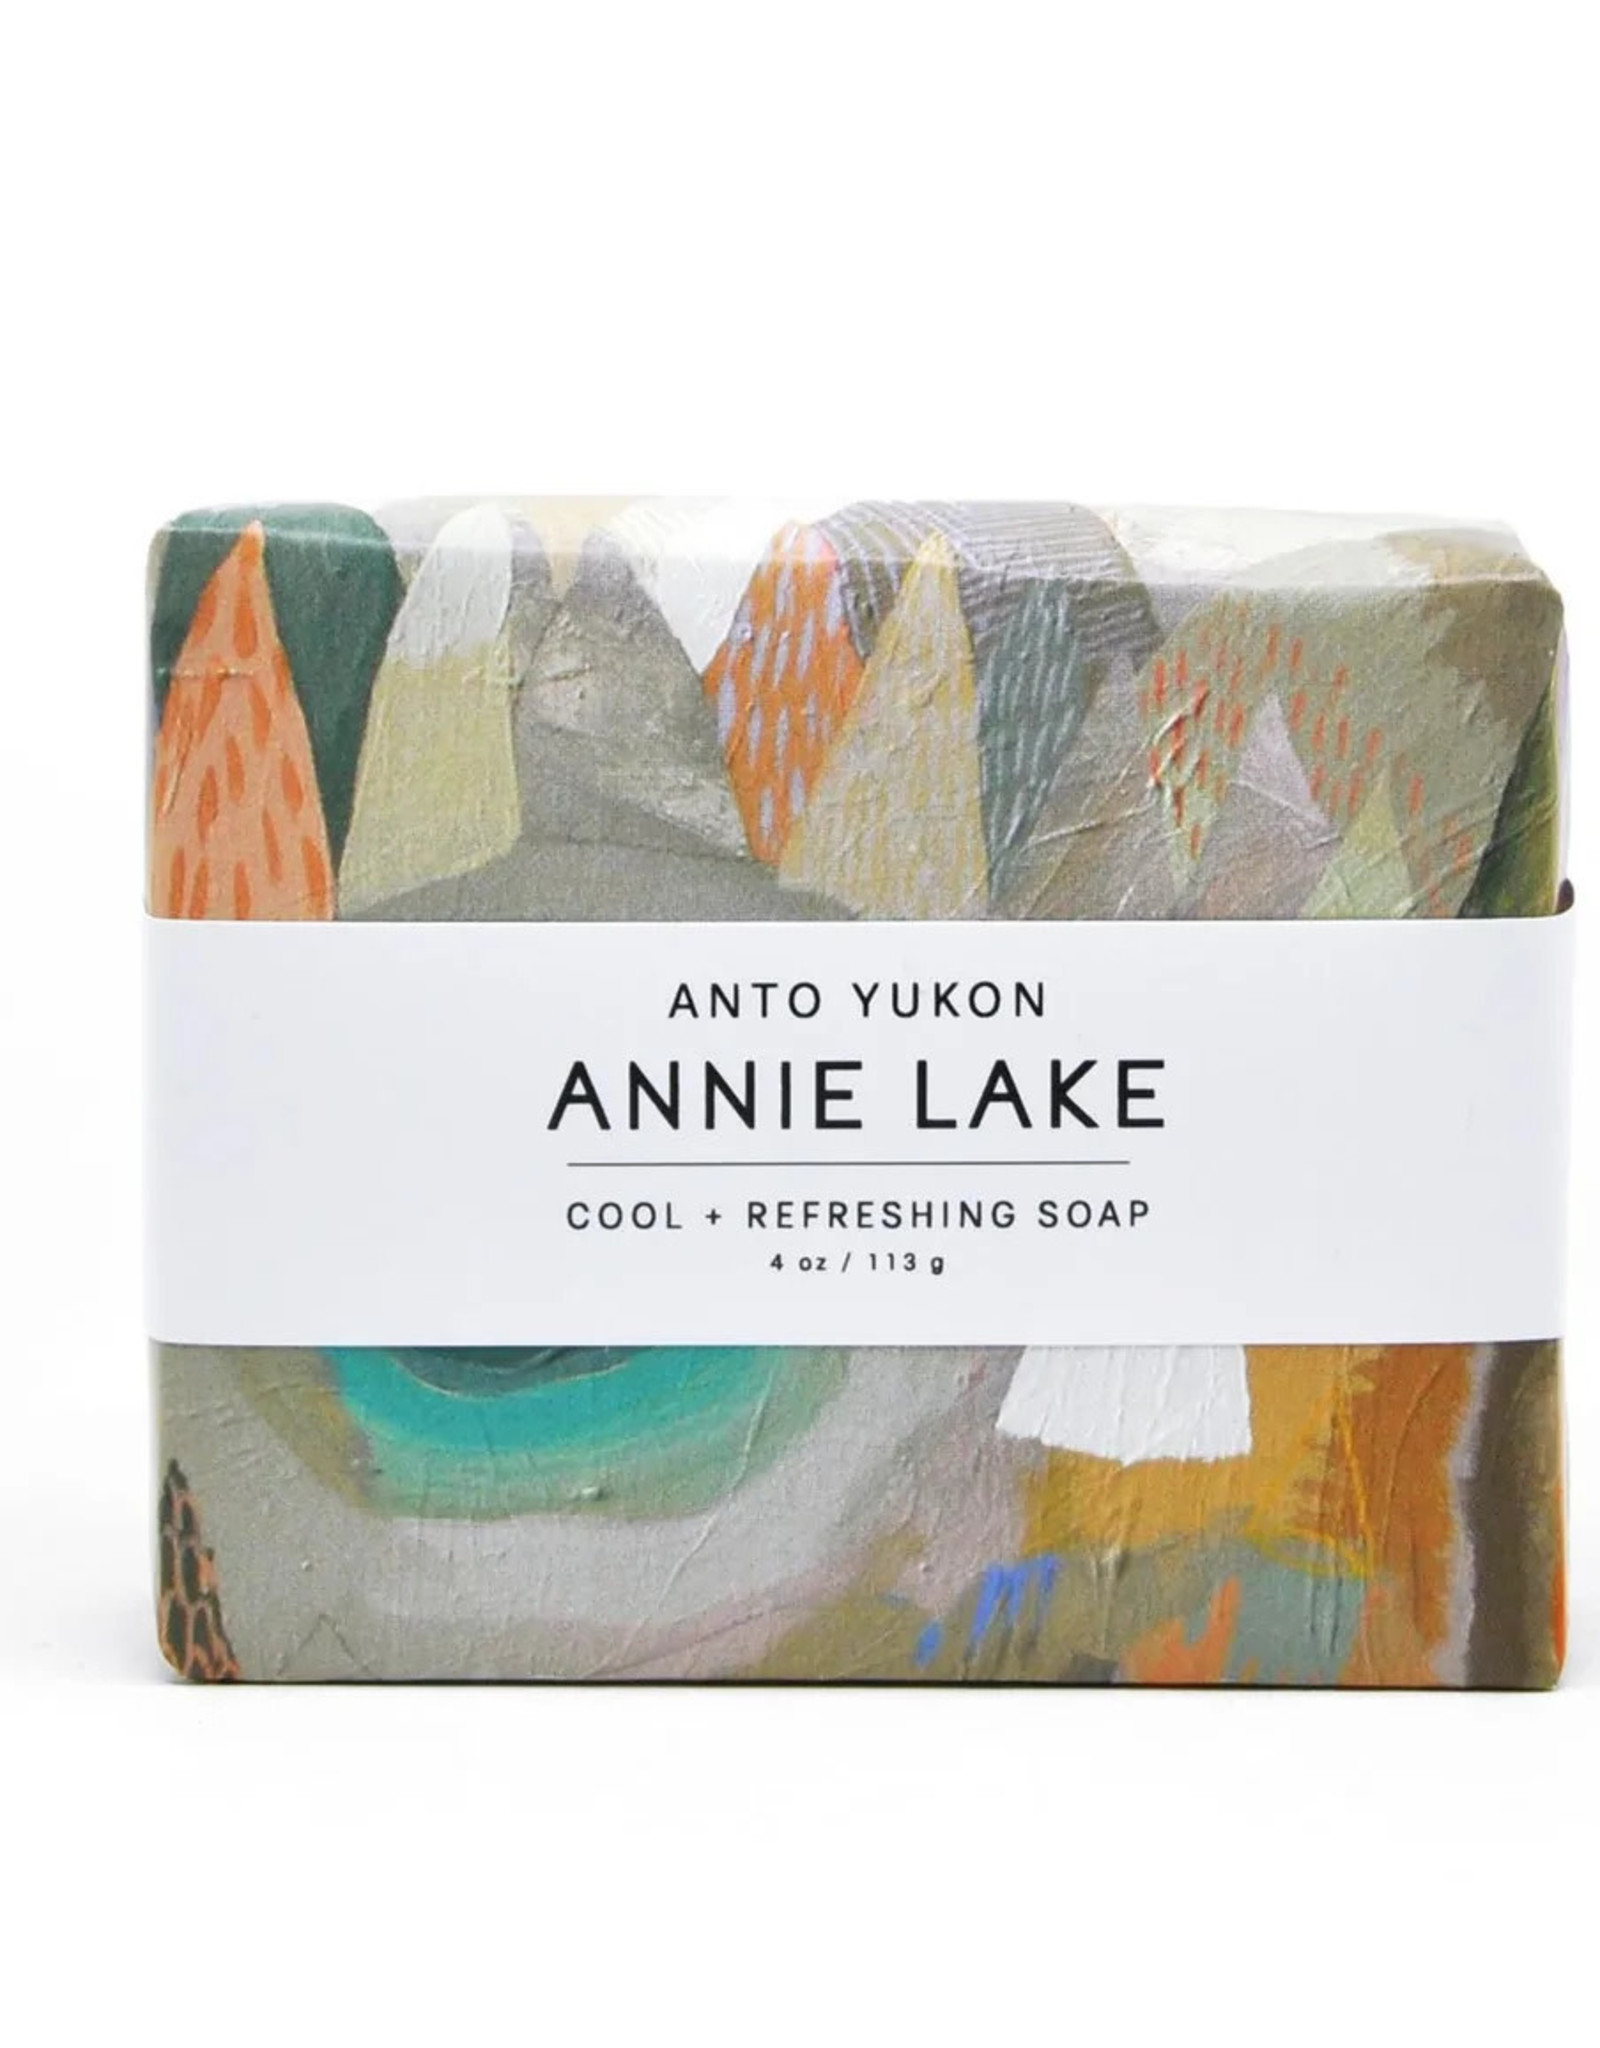 Anto Yukon Anto Yukon Annie Lake Soap